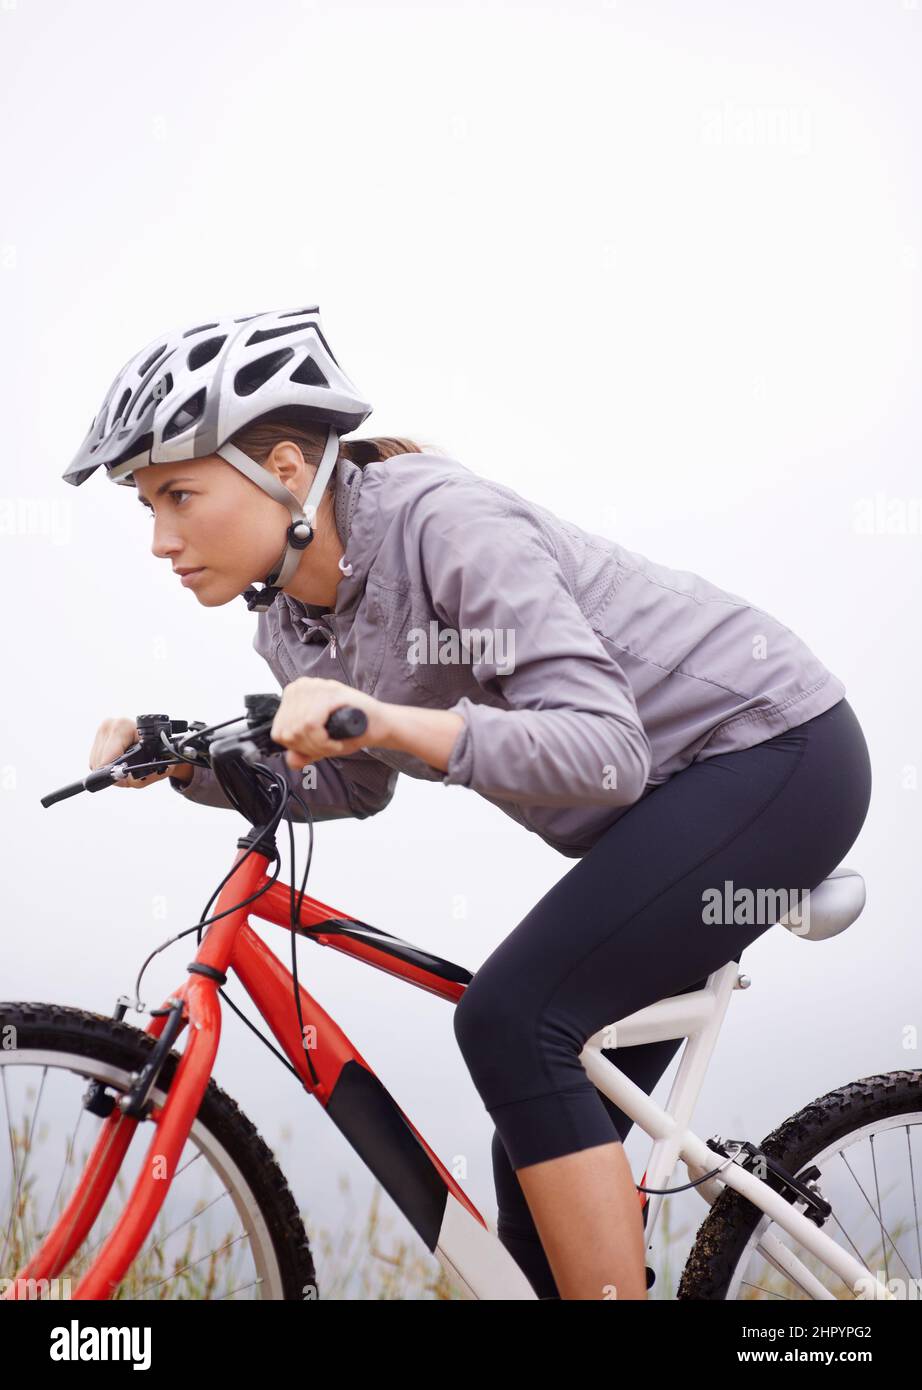 La sua alwa. Sparato di una mountain bike femminile fuori per un giro di prima mattina. Foto Stock